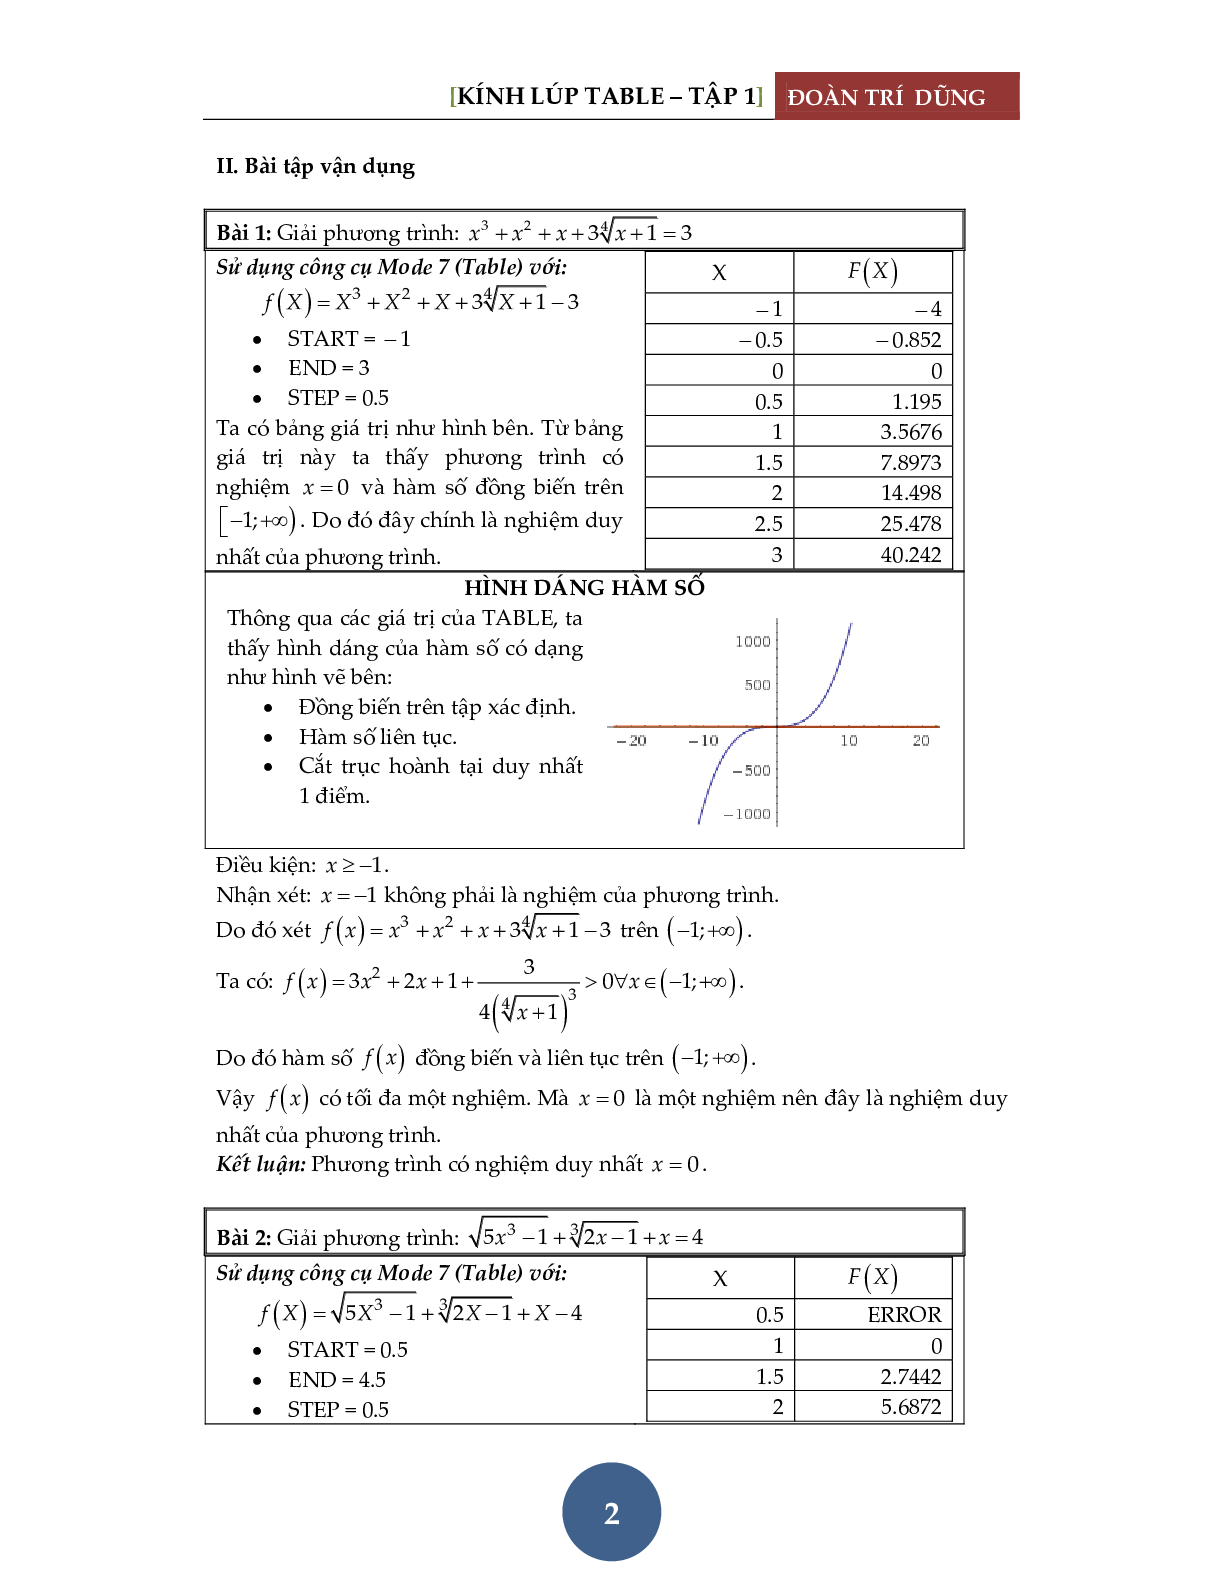 Giải phương trình bằng máy tính Casio – Đánh giá hàm đơn điệu (trang 3)